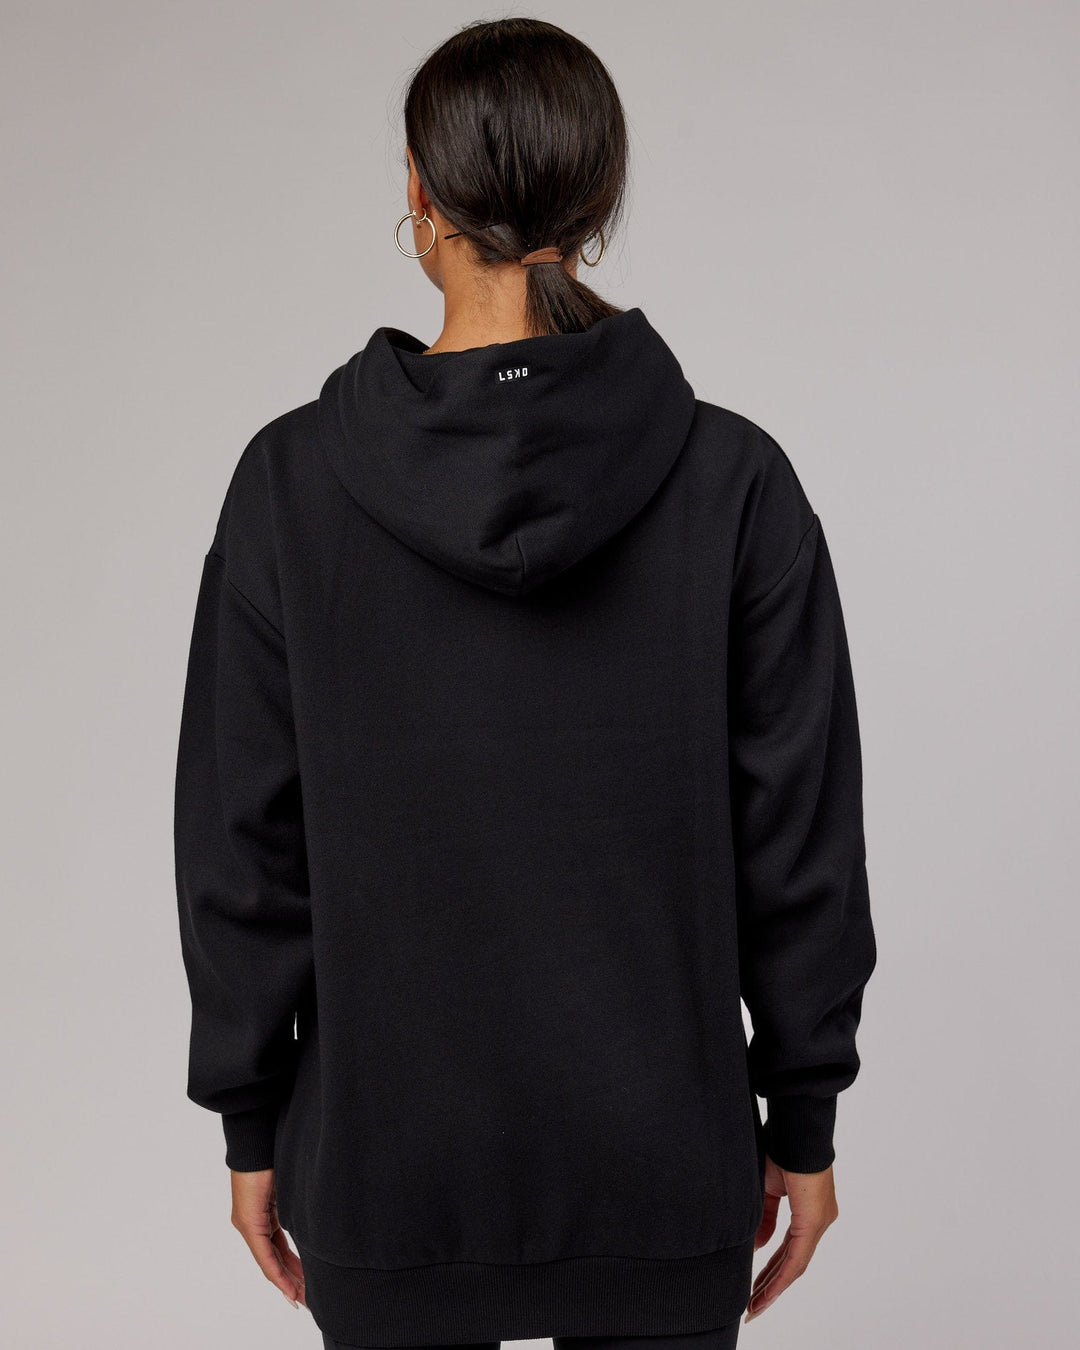 Woman wearing Unisex Capsule Hoodie Oversize - Black